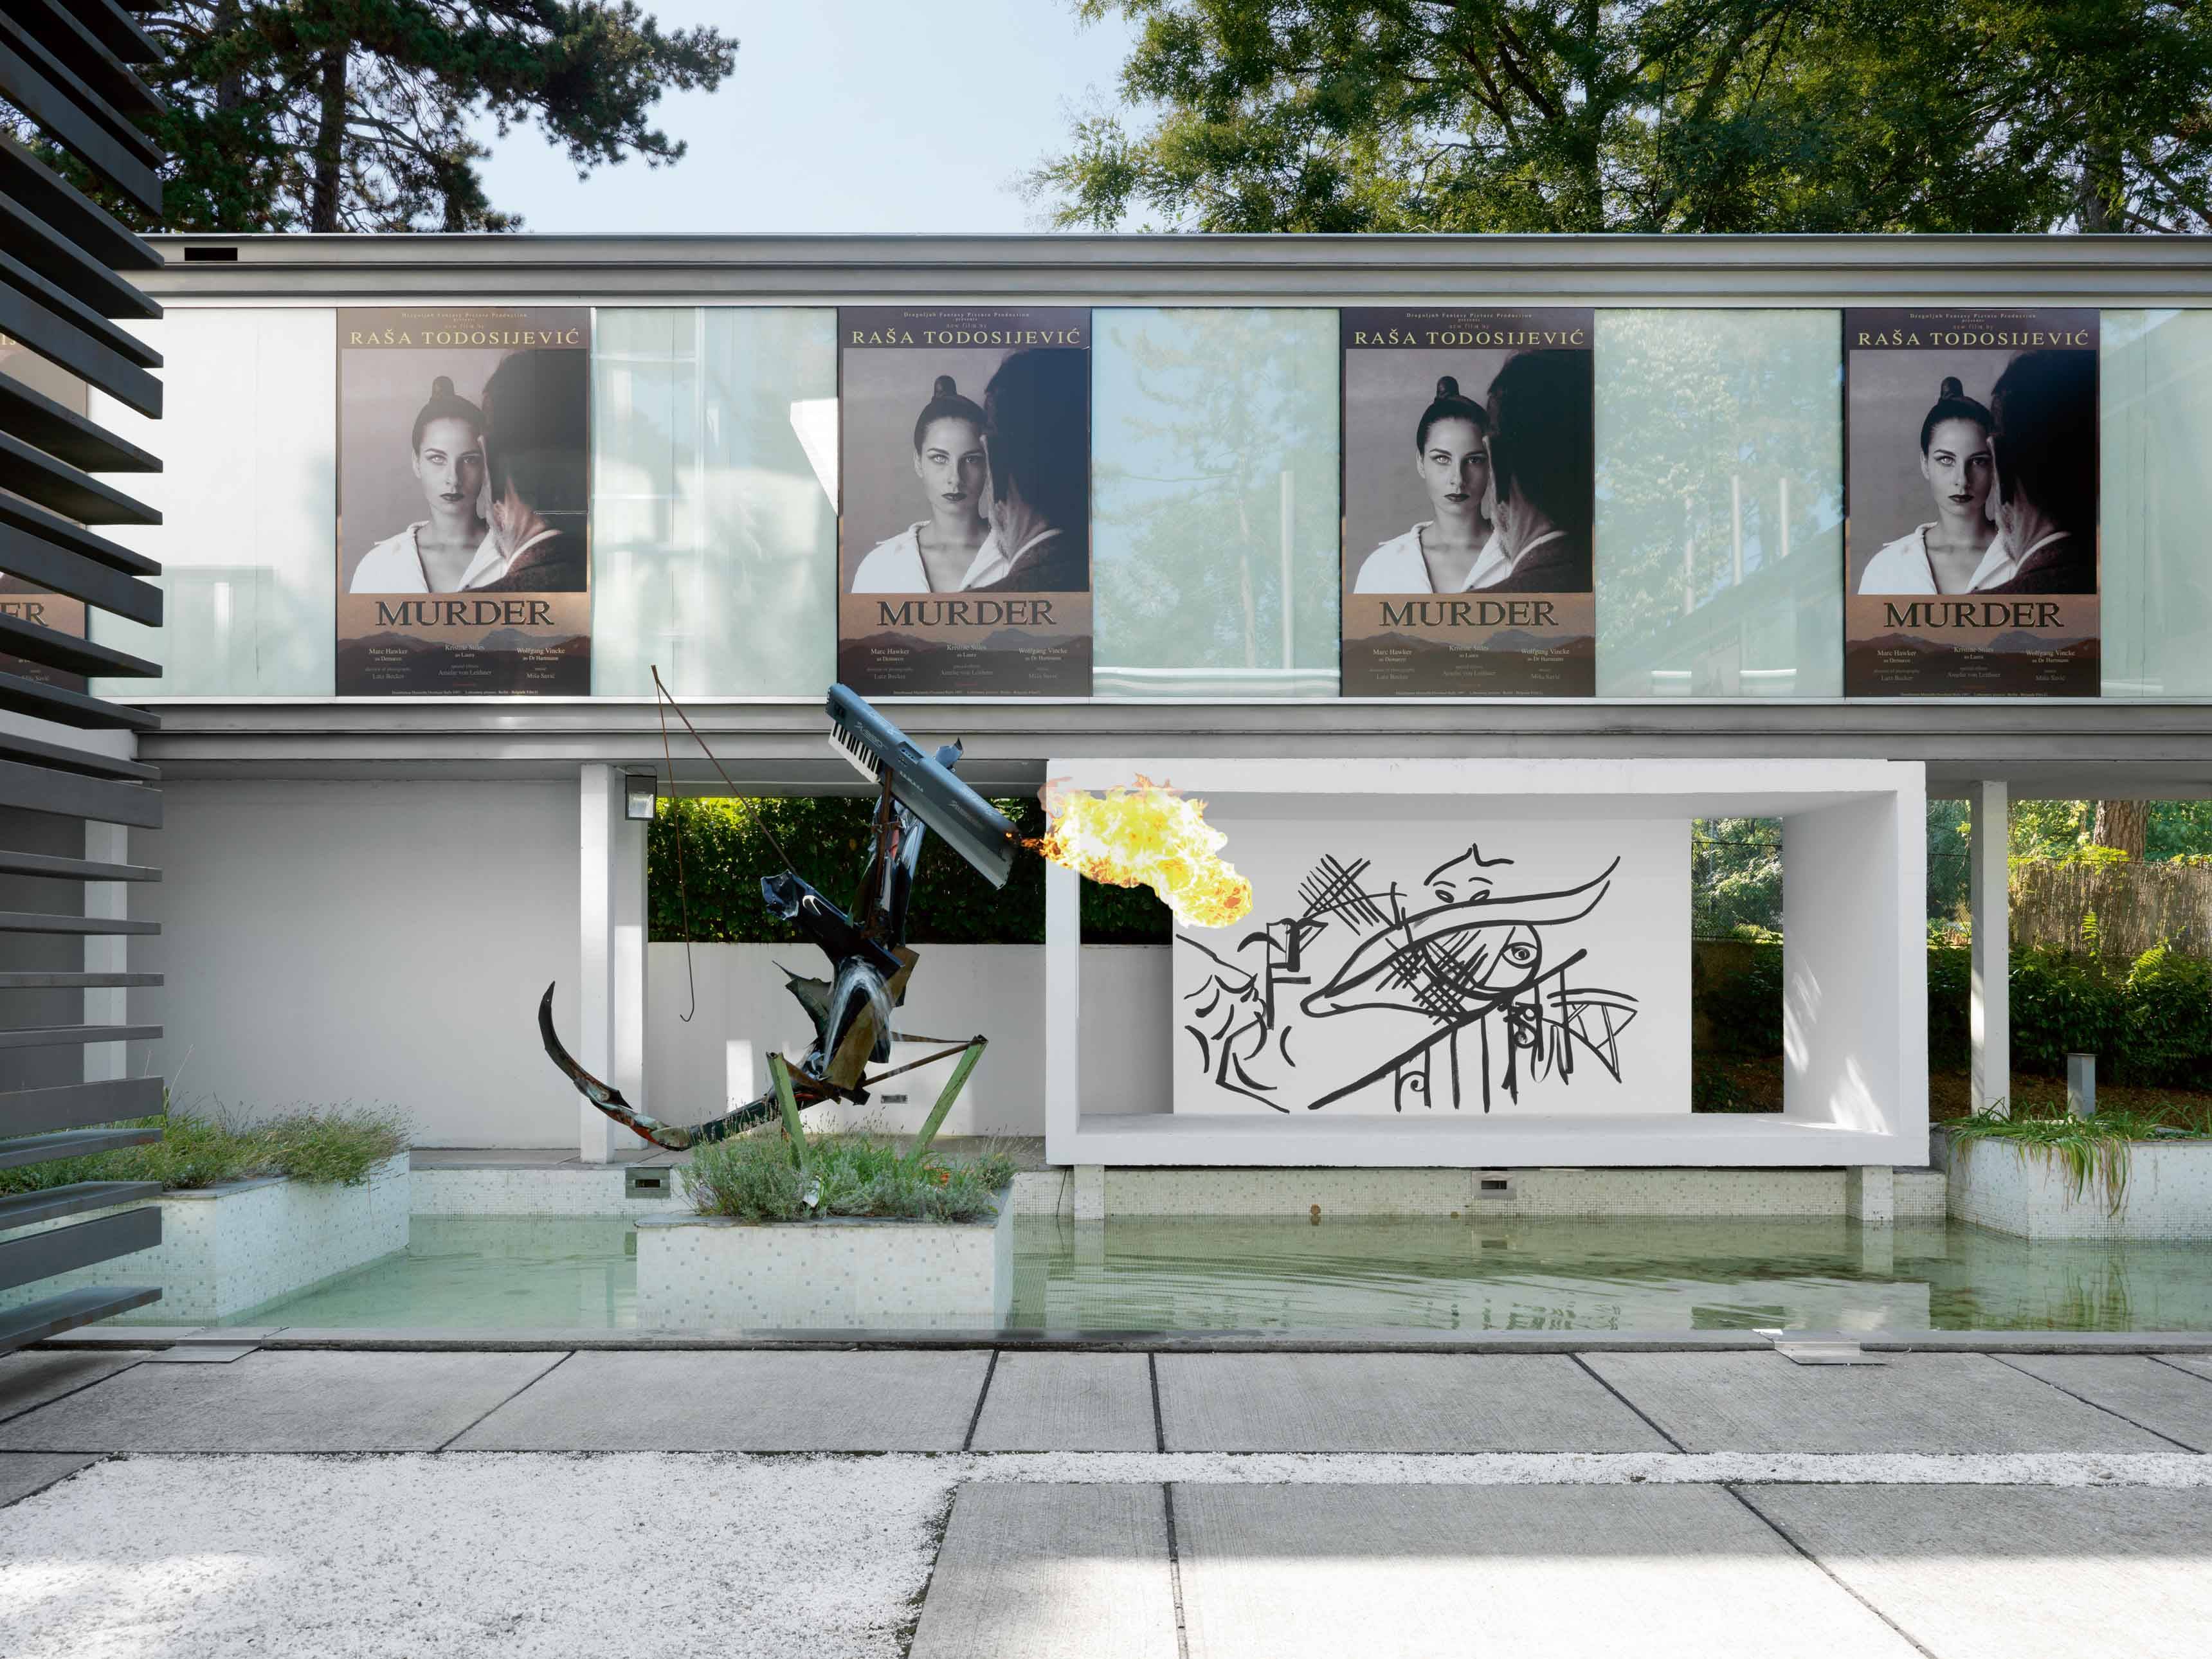 Vue de l’exposition Fade in 2 (affiches de Rasa Todosijevic et sculpture cracheuse de feu de Tobias Spichtig), dans une villa moderniste de Belgrade. 